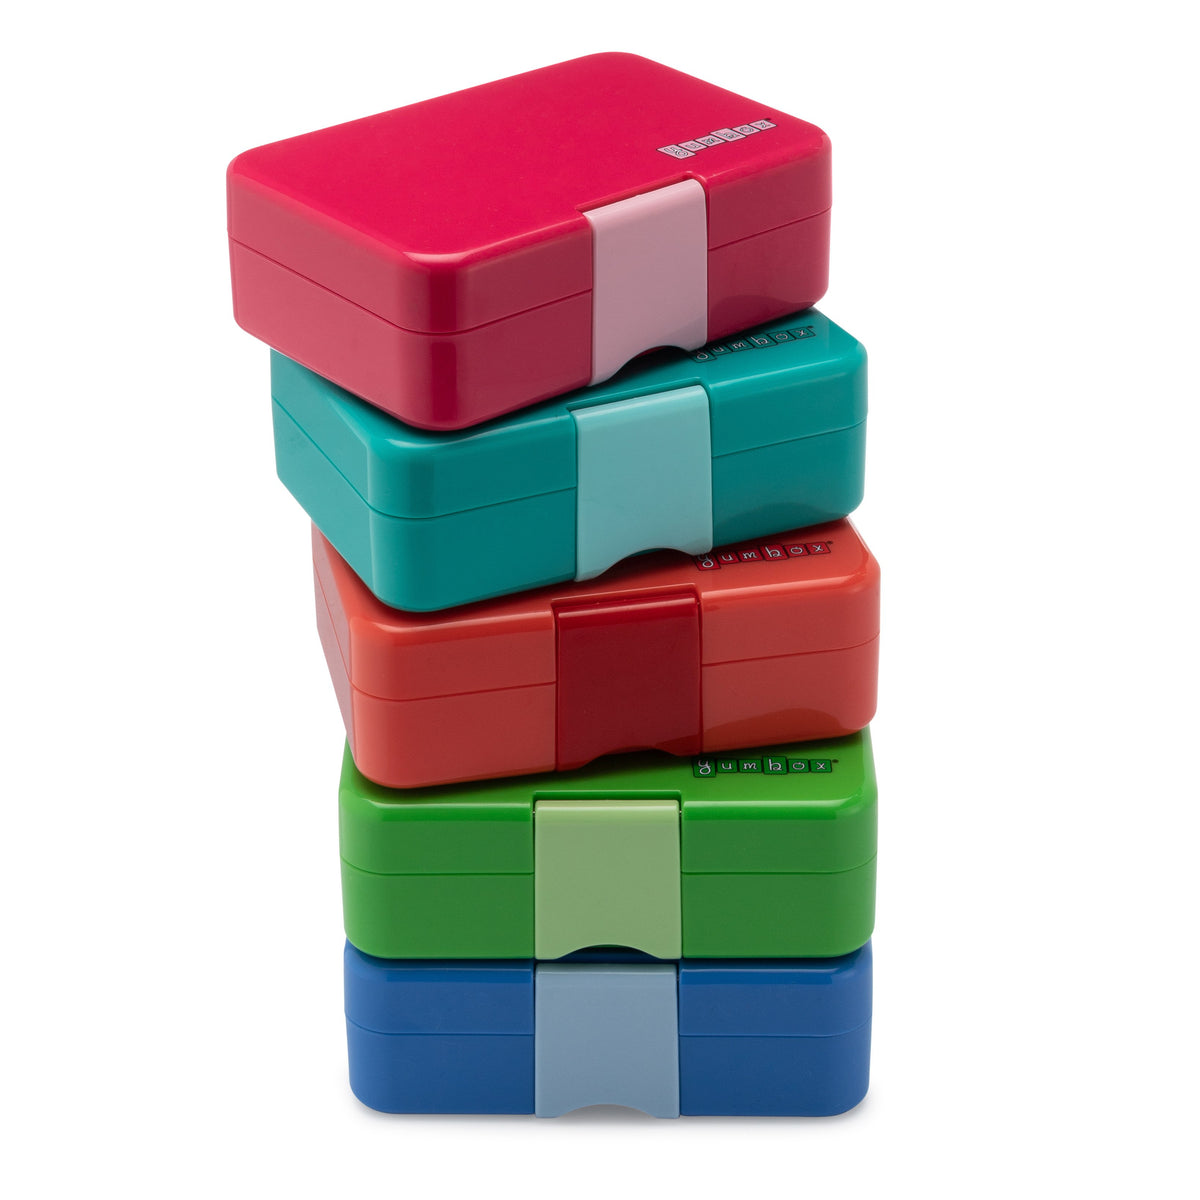 yumbox-mini-snack-cilantro-green-3-compartment-lunch-box- (3)